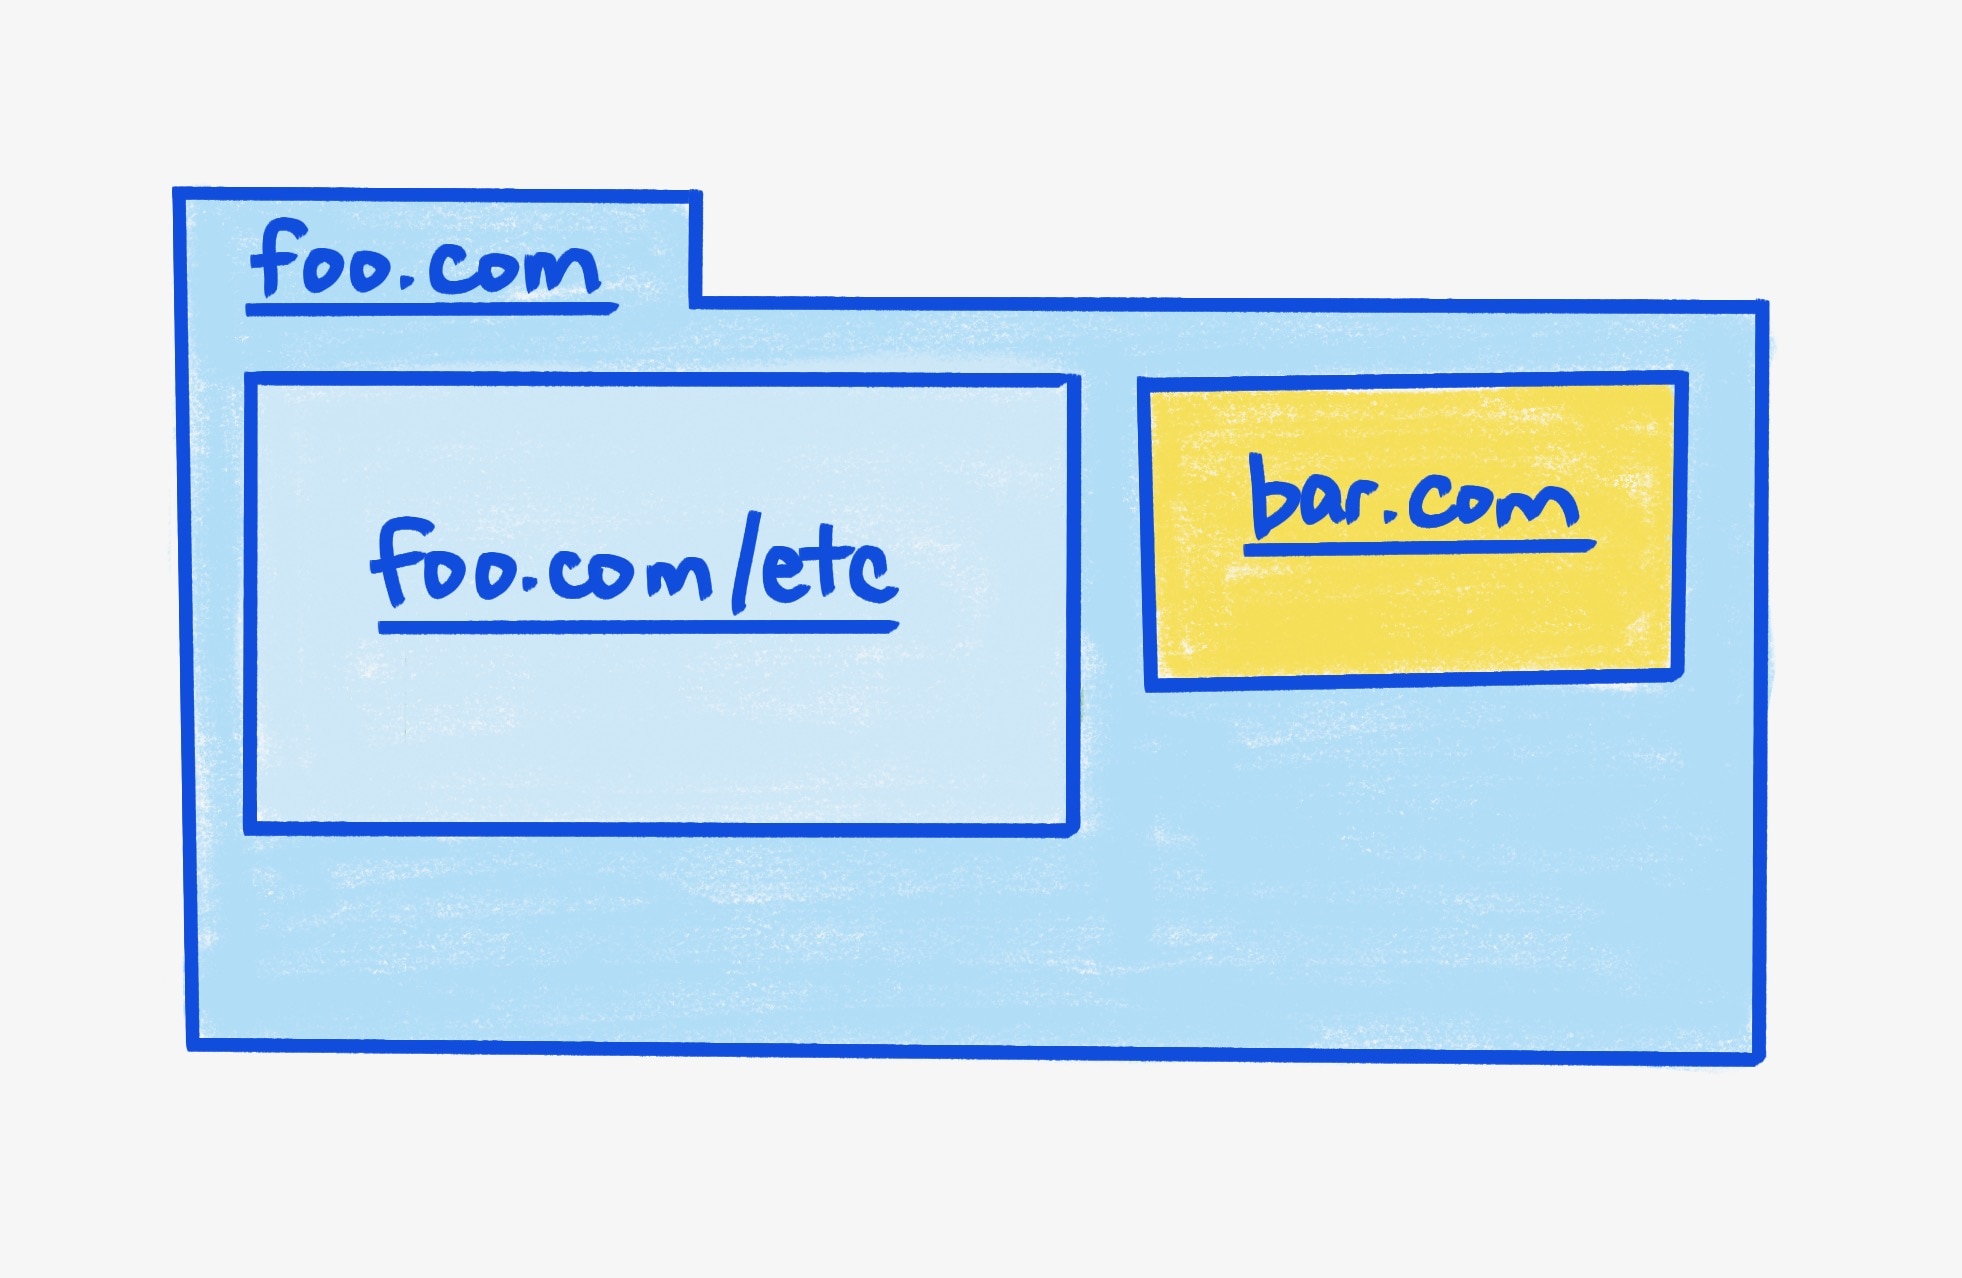 מסגרת הורה מסוג foo.com, שמכילה שני iframes.